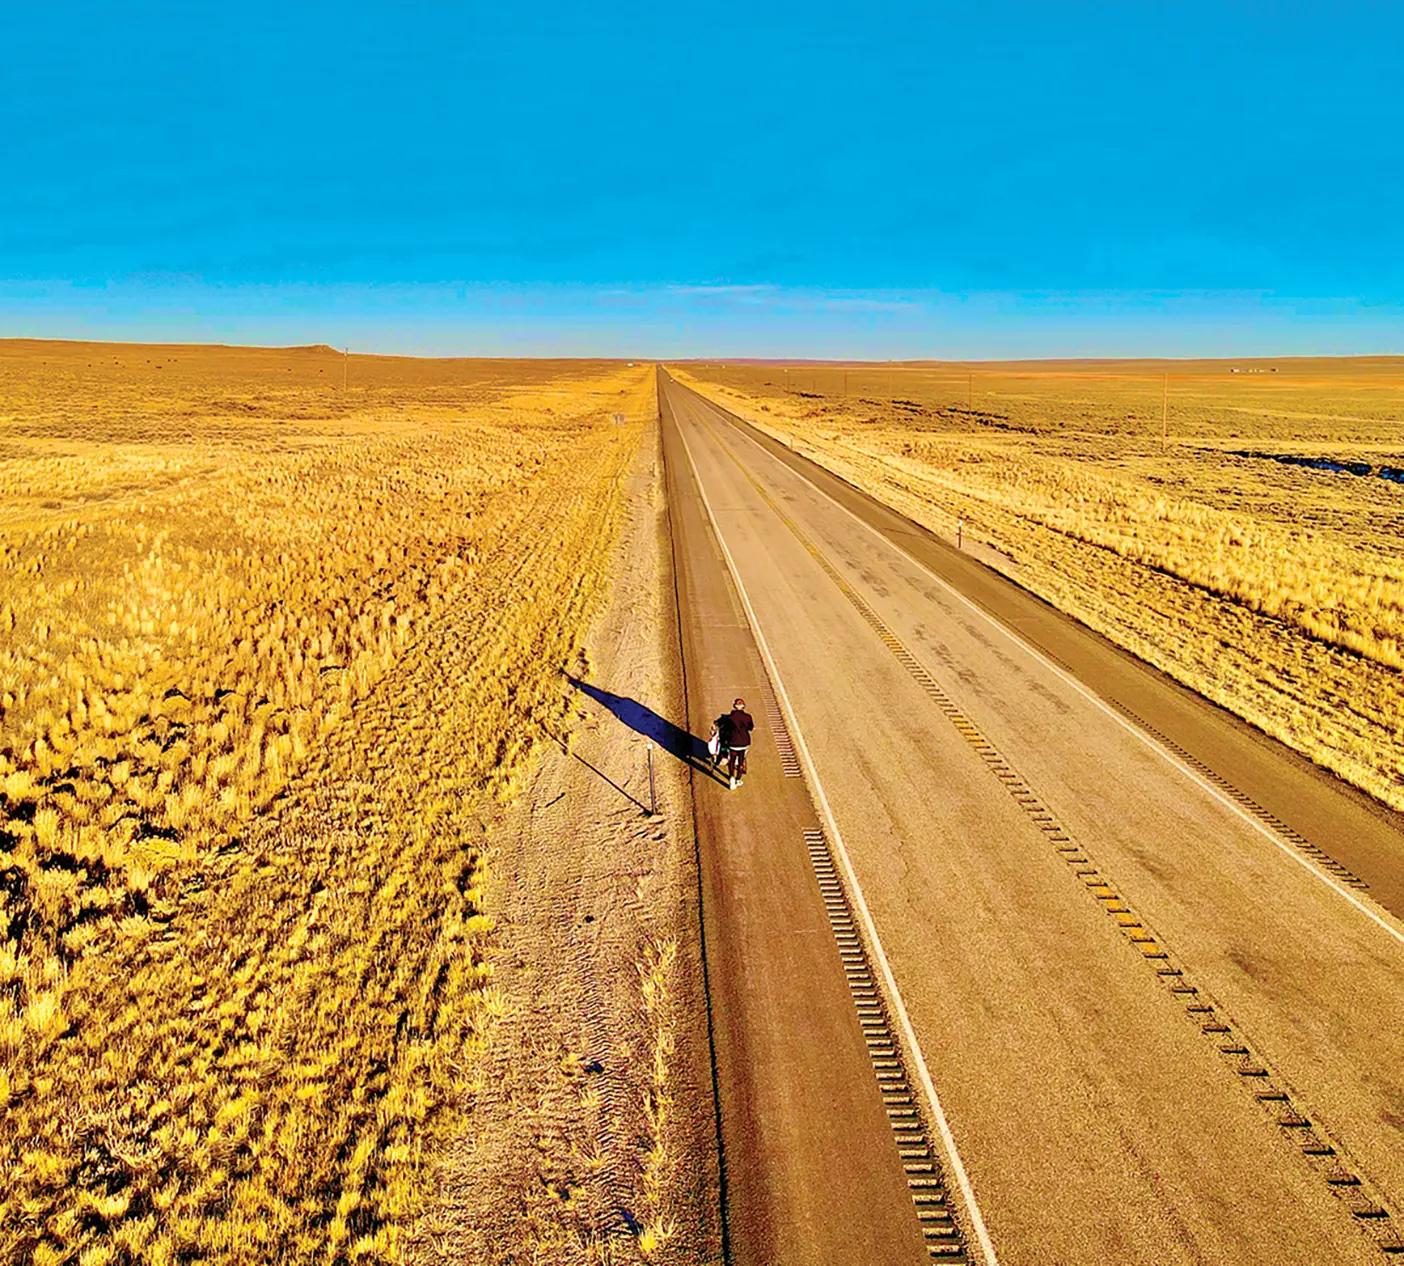 Isaiah Shields walking on a prairie road.